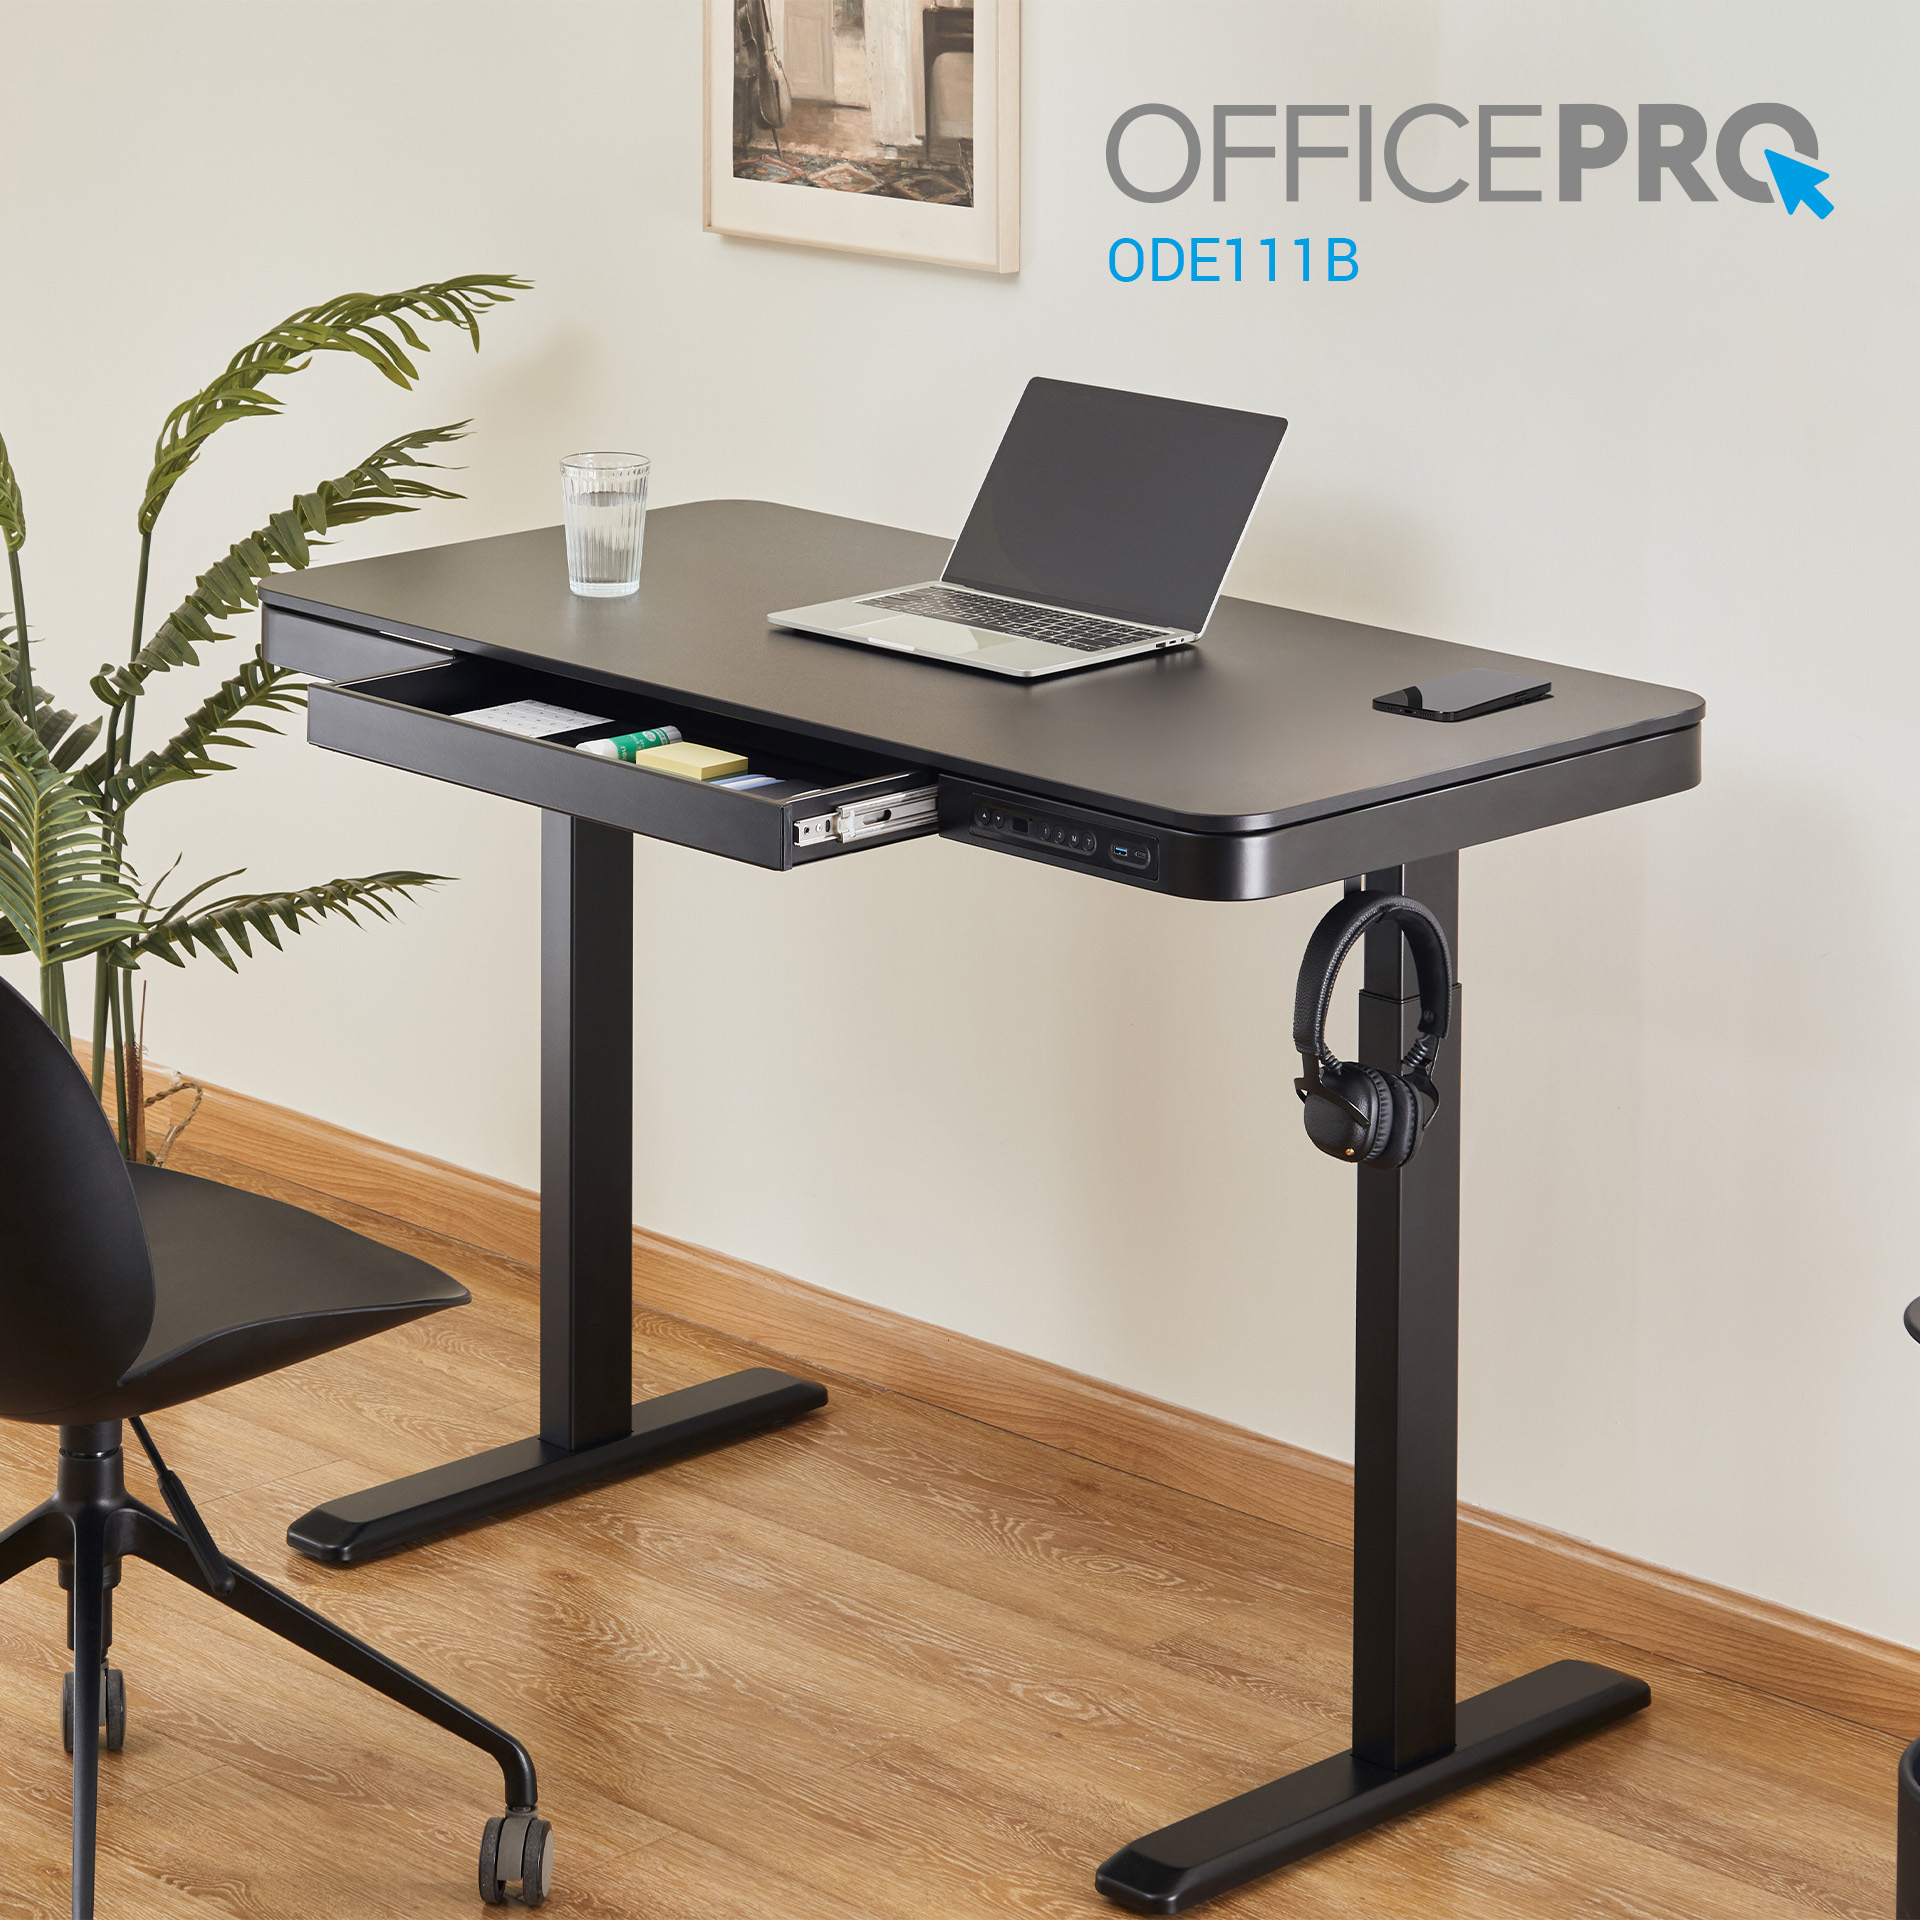 Комп'ютерний стіл OfficePro з електрорегулюванням висоти чорний (ODE111B) - фото 17